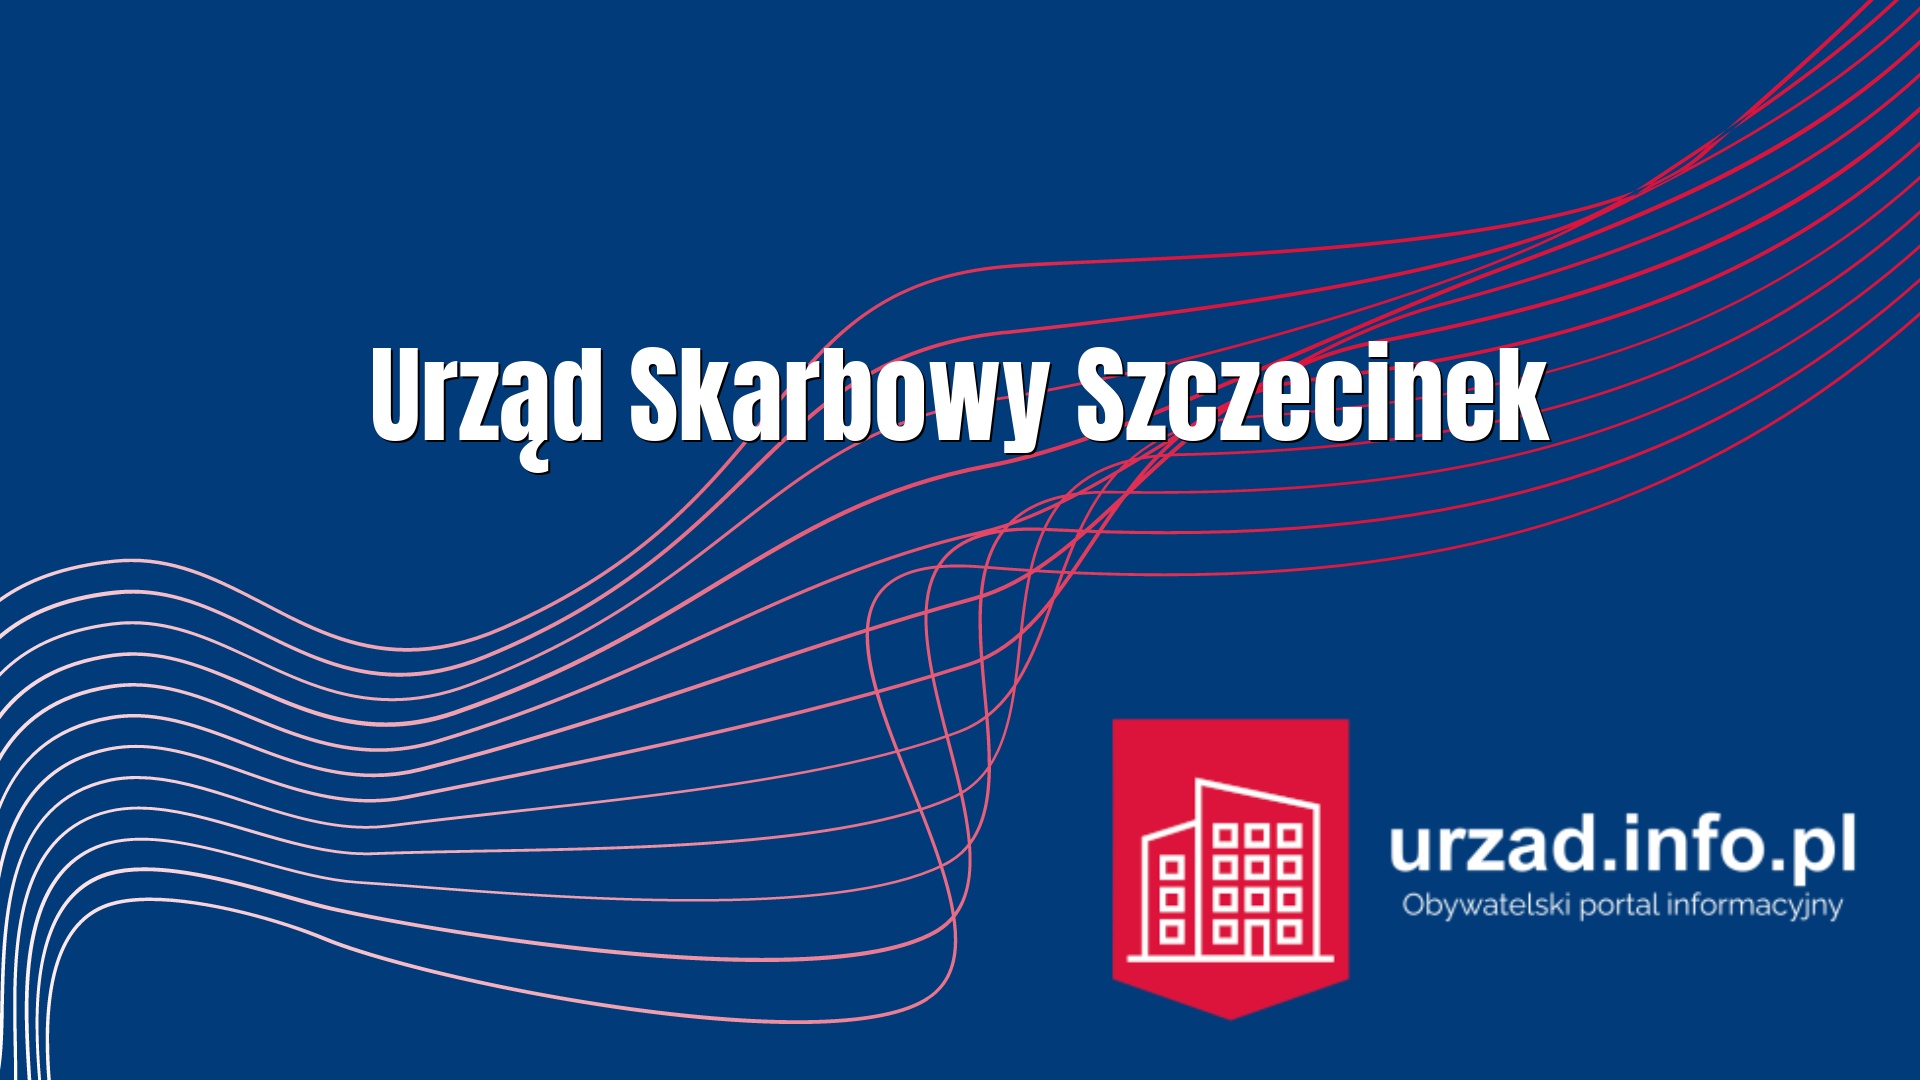 Urząd Skarbowy Szczecinek